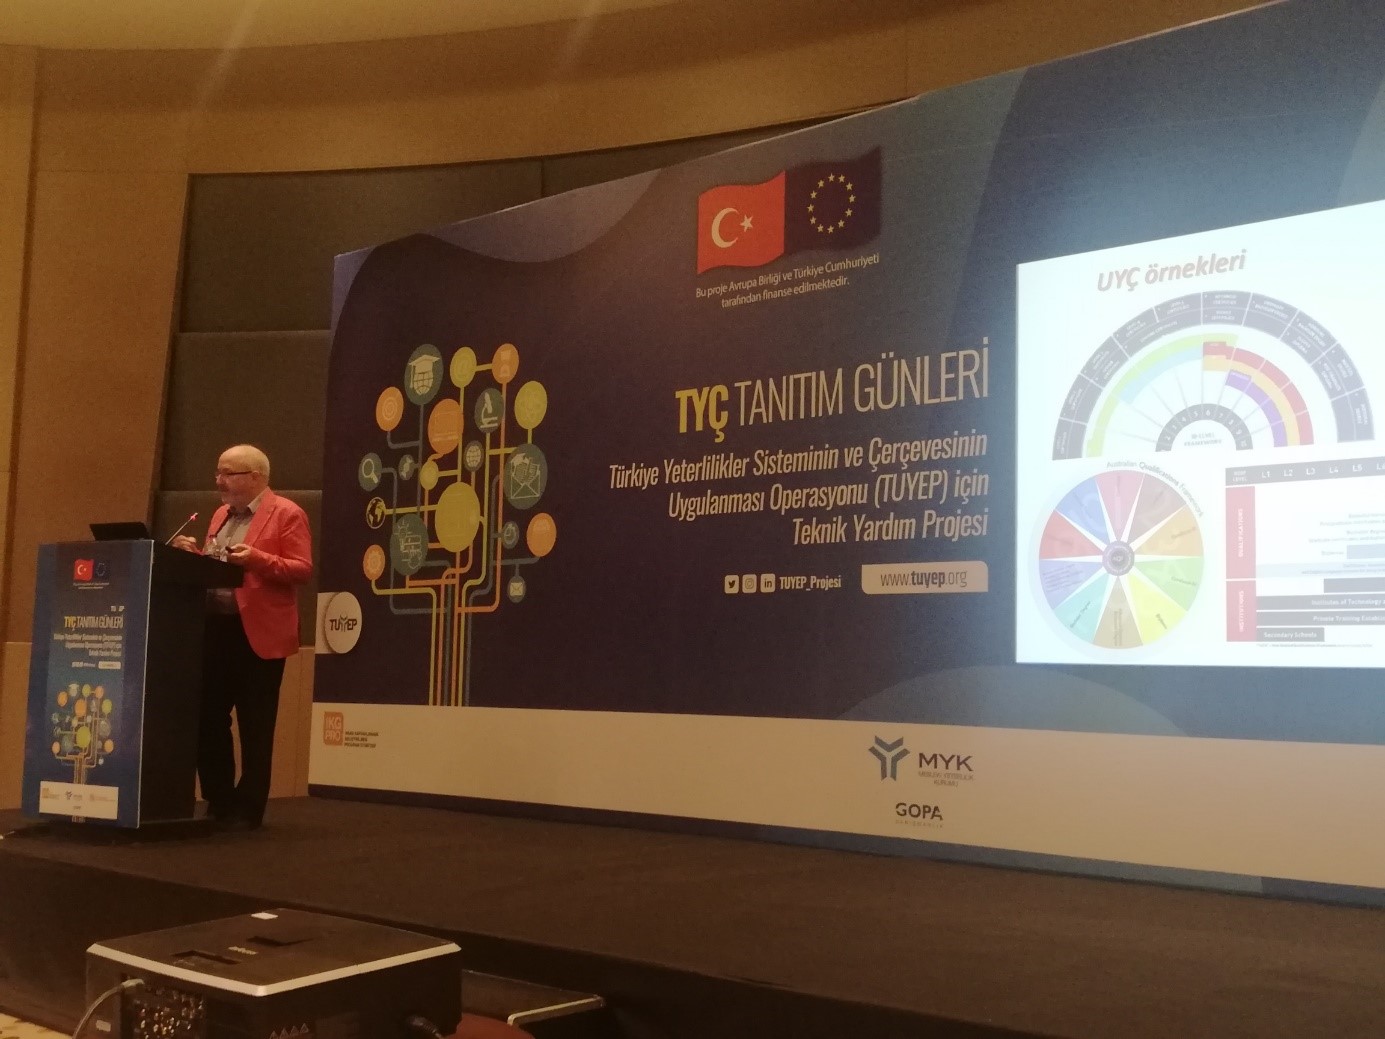 TUYEP Projesi Kapsamında Adana’da TYÇ Tanıtım Günleri Etkinliği Gerçekleştirildi